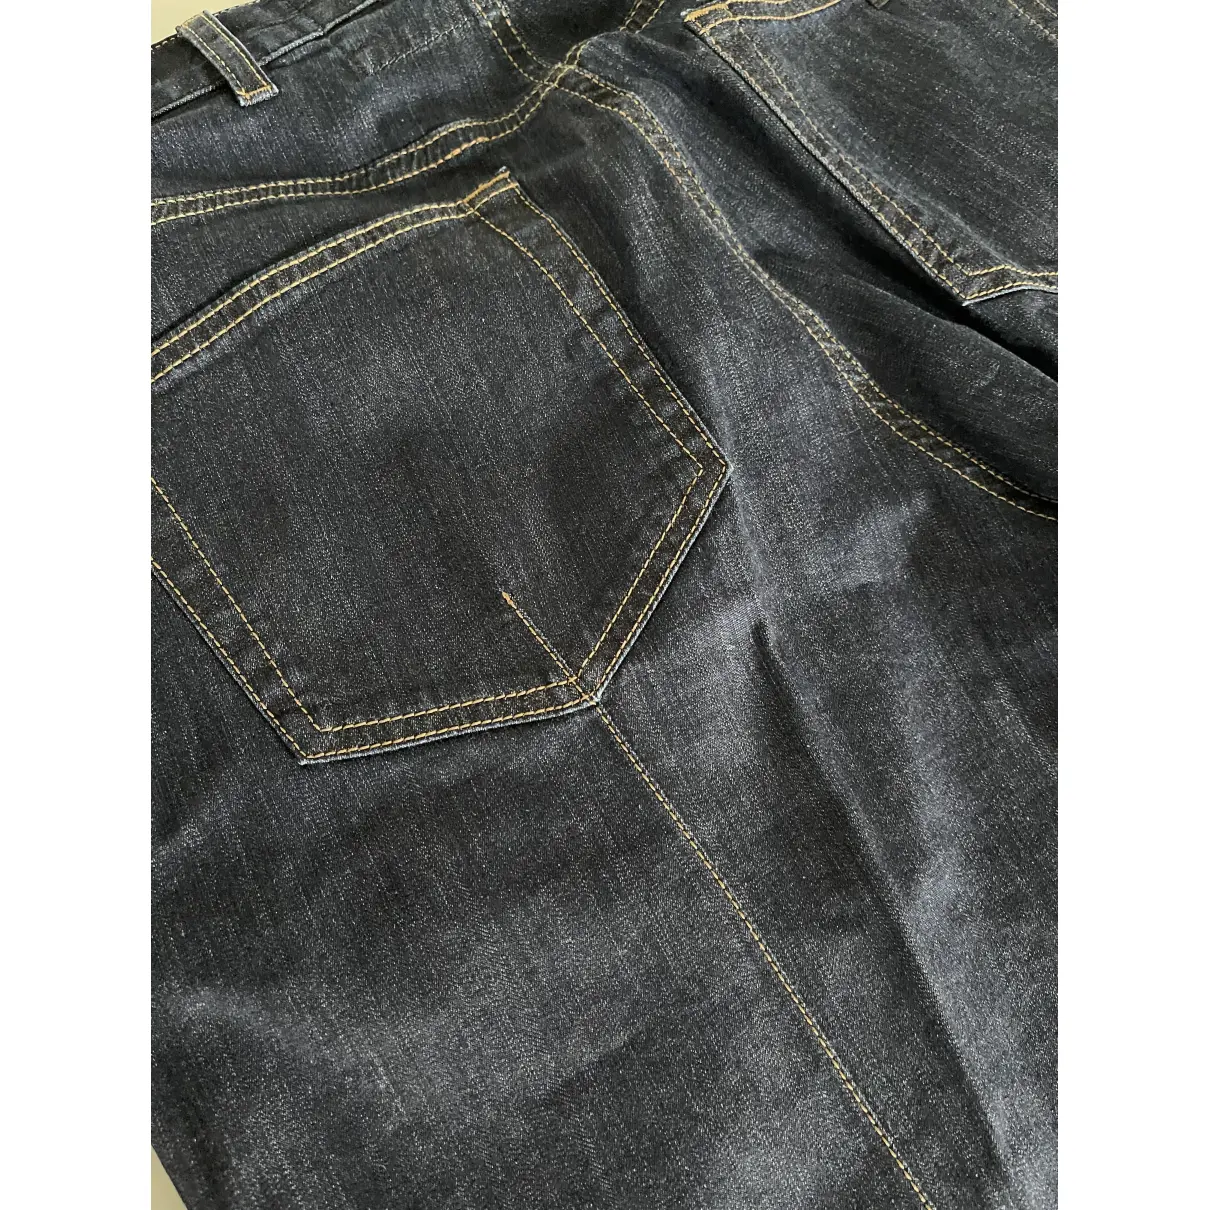 Blue Cotton - elasthane Jeans Prada